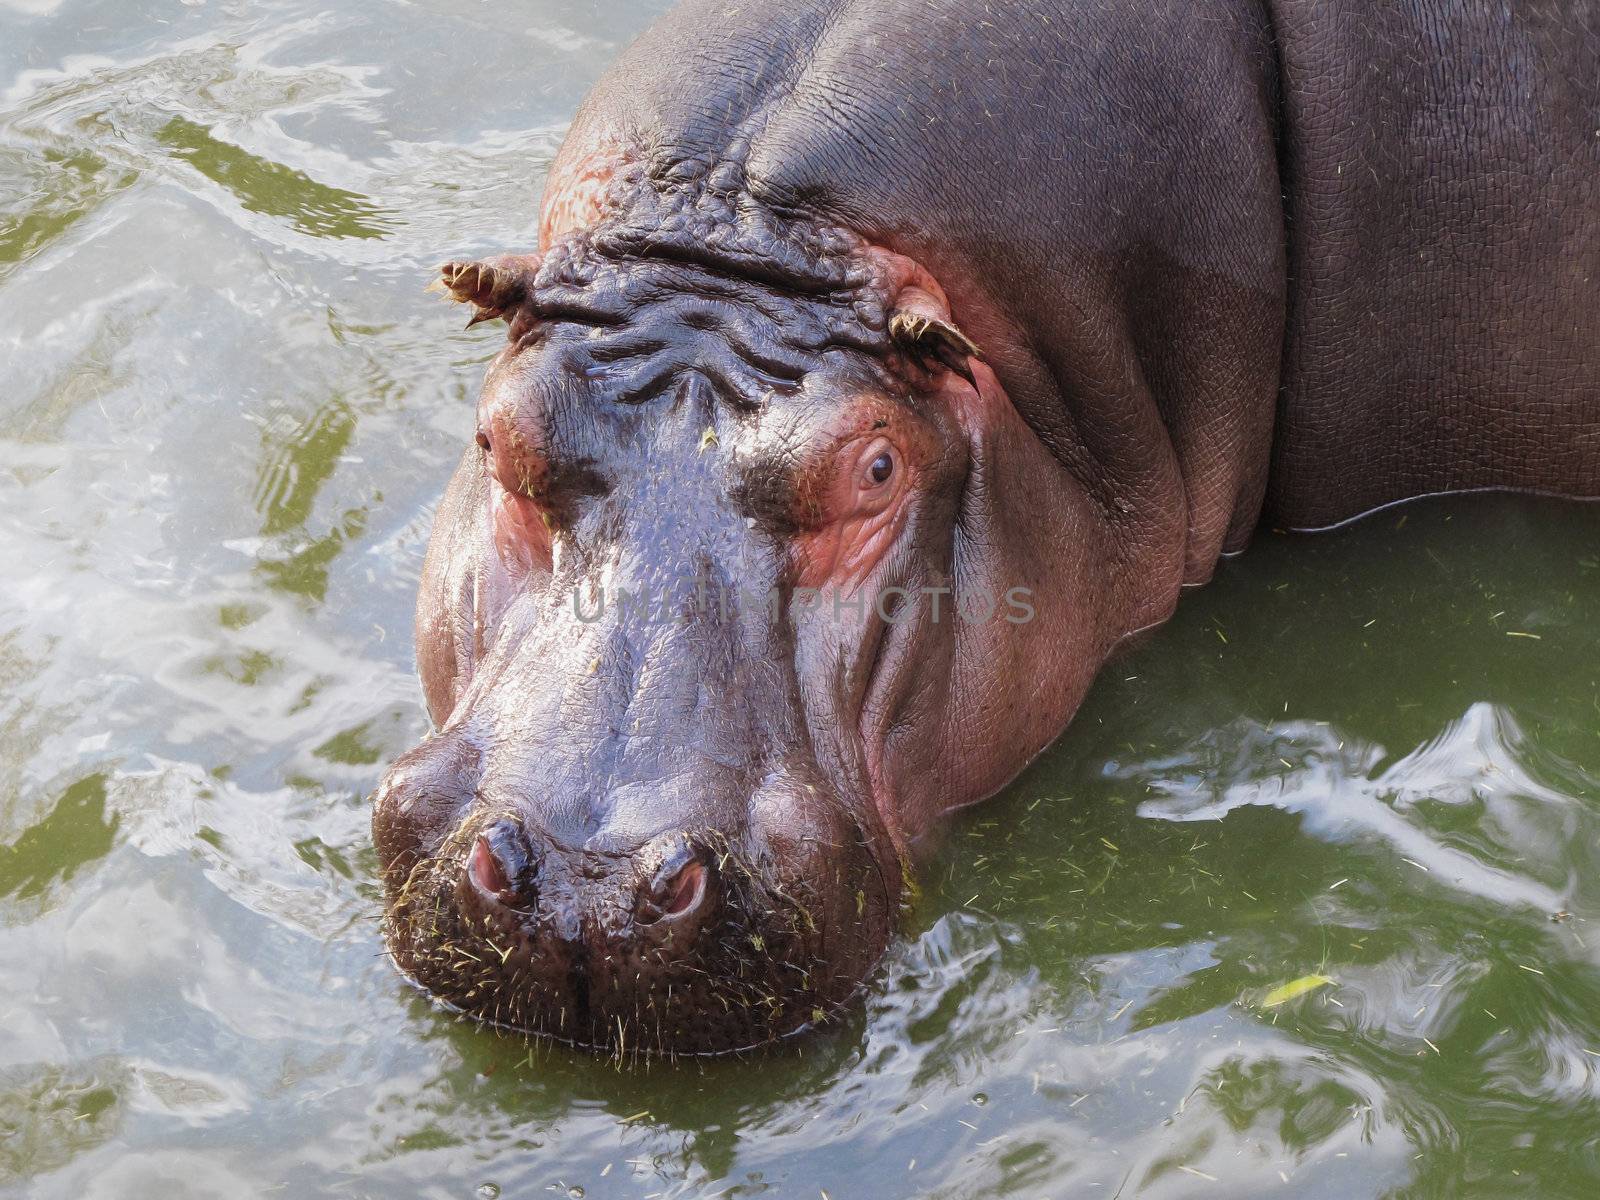 Hippo in water by Arrxxx